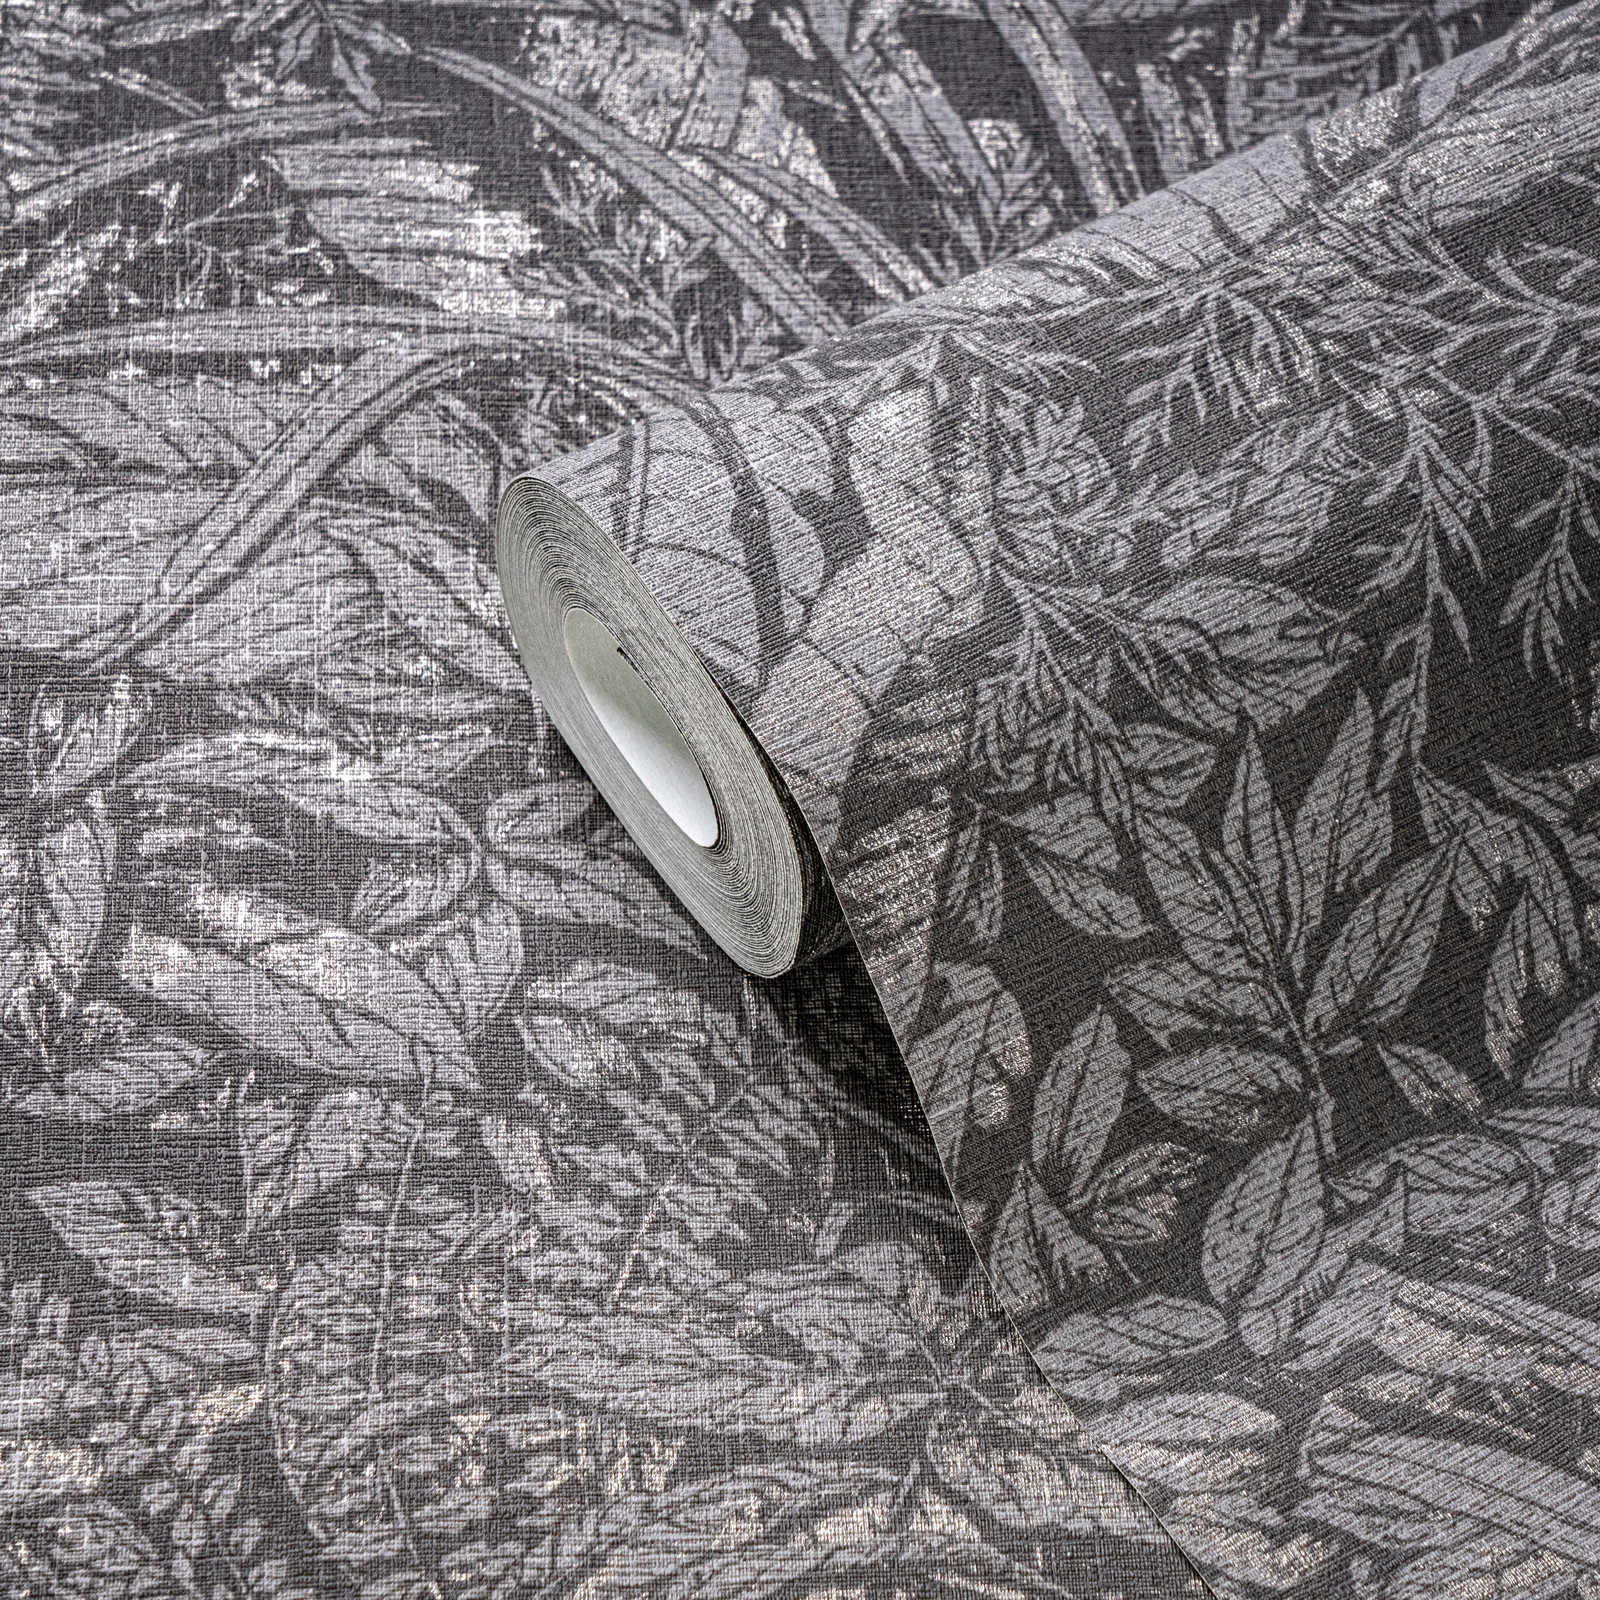             Papel pintado no tejido con motivo de hojas florales - gris, negro, plata
        